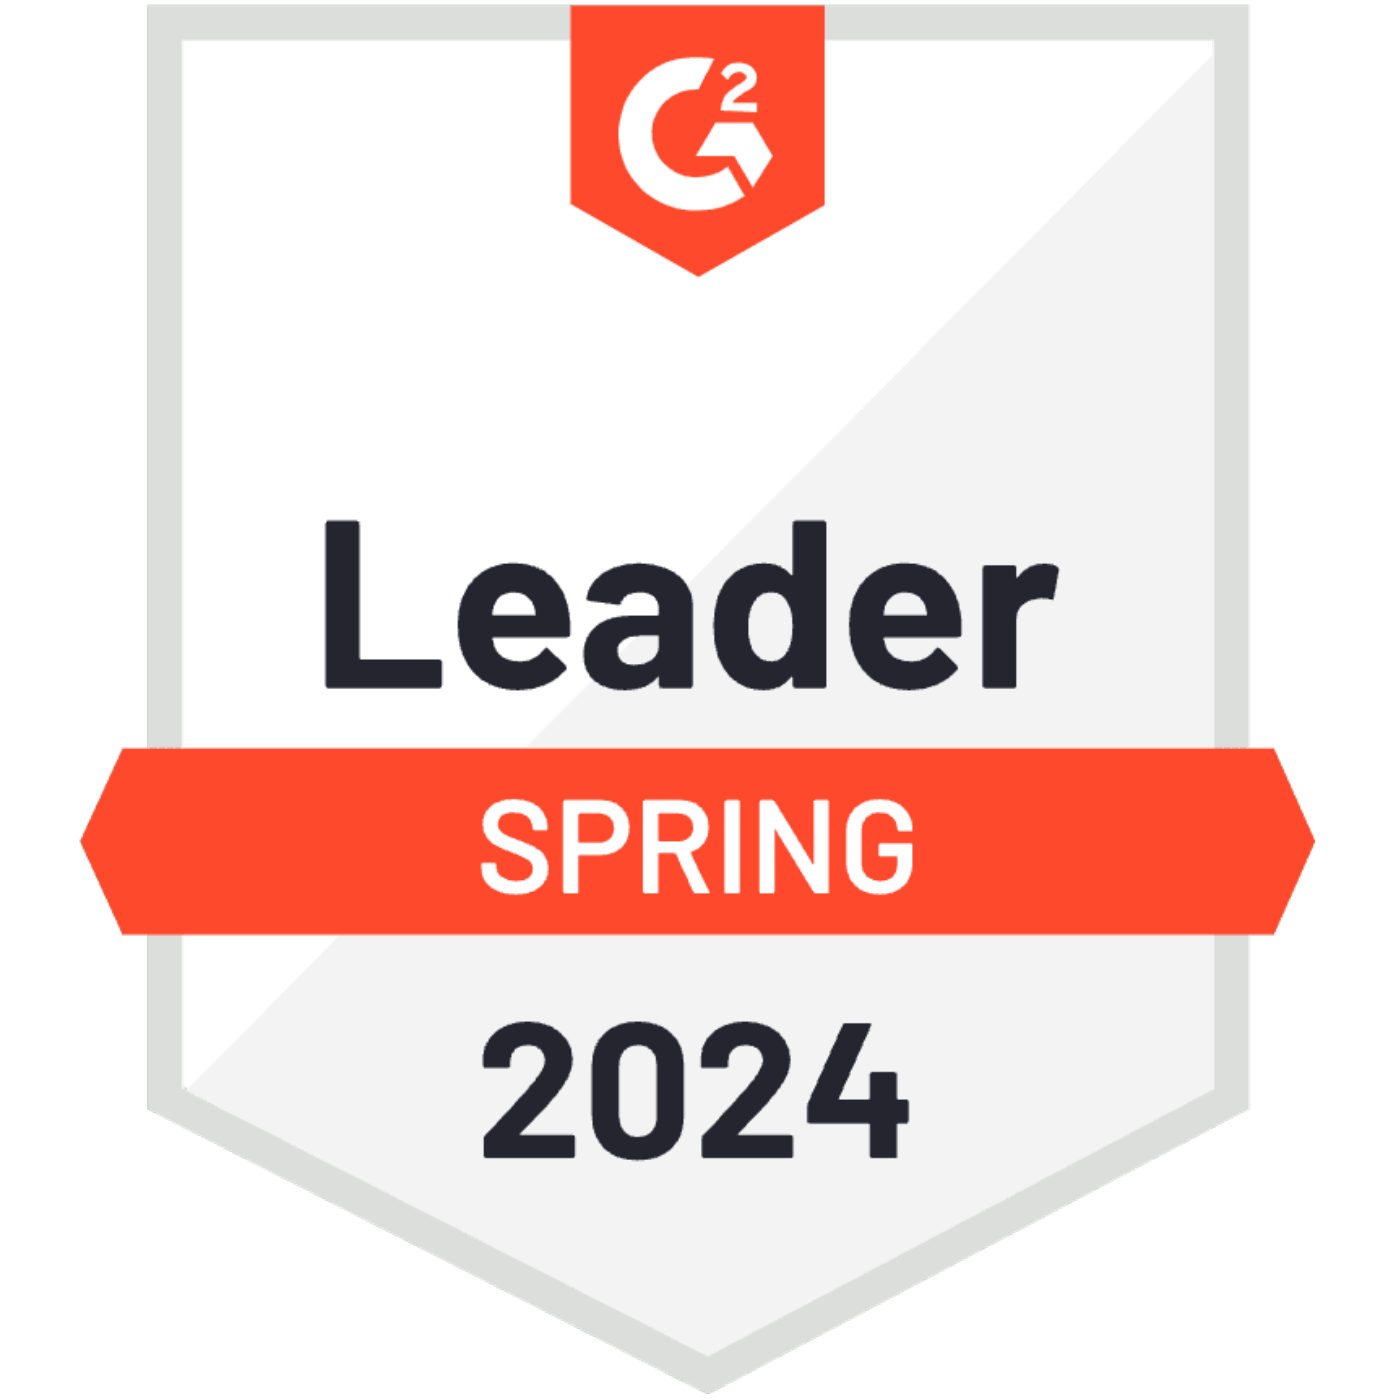 G2_Leader_Spring_2024_600_600